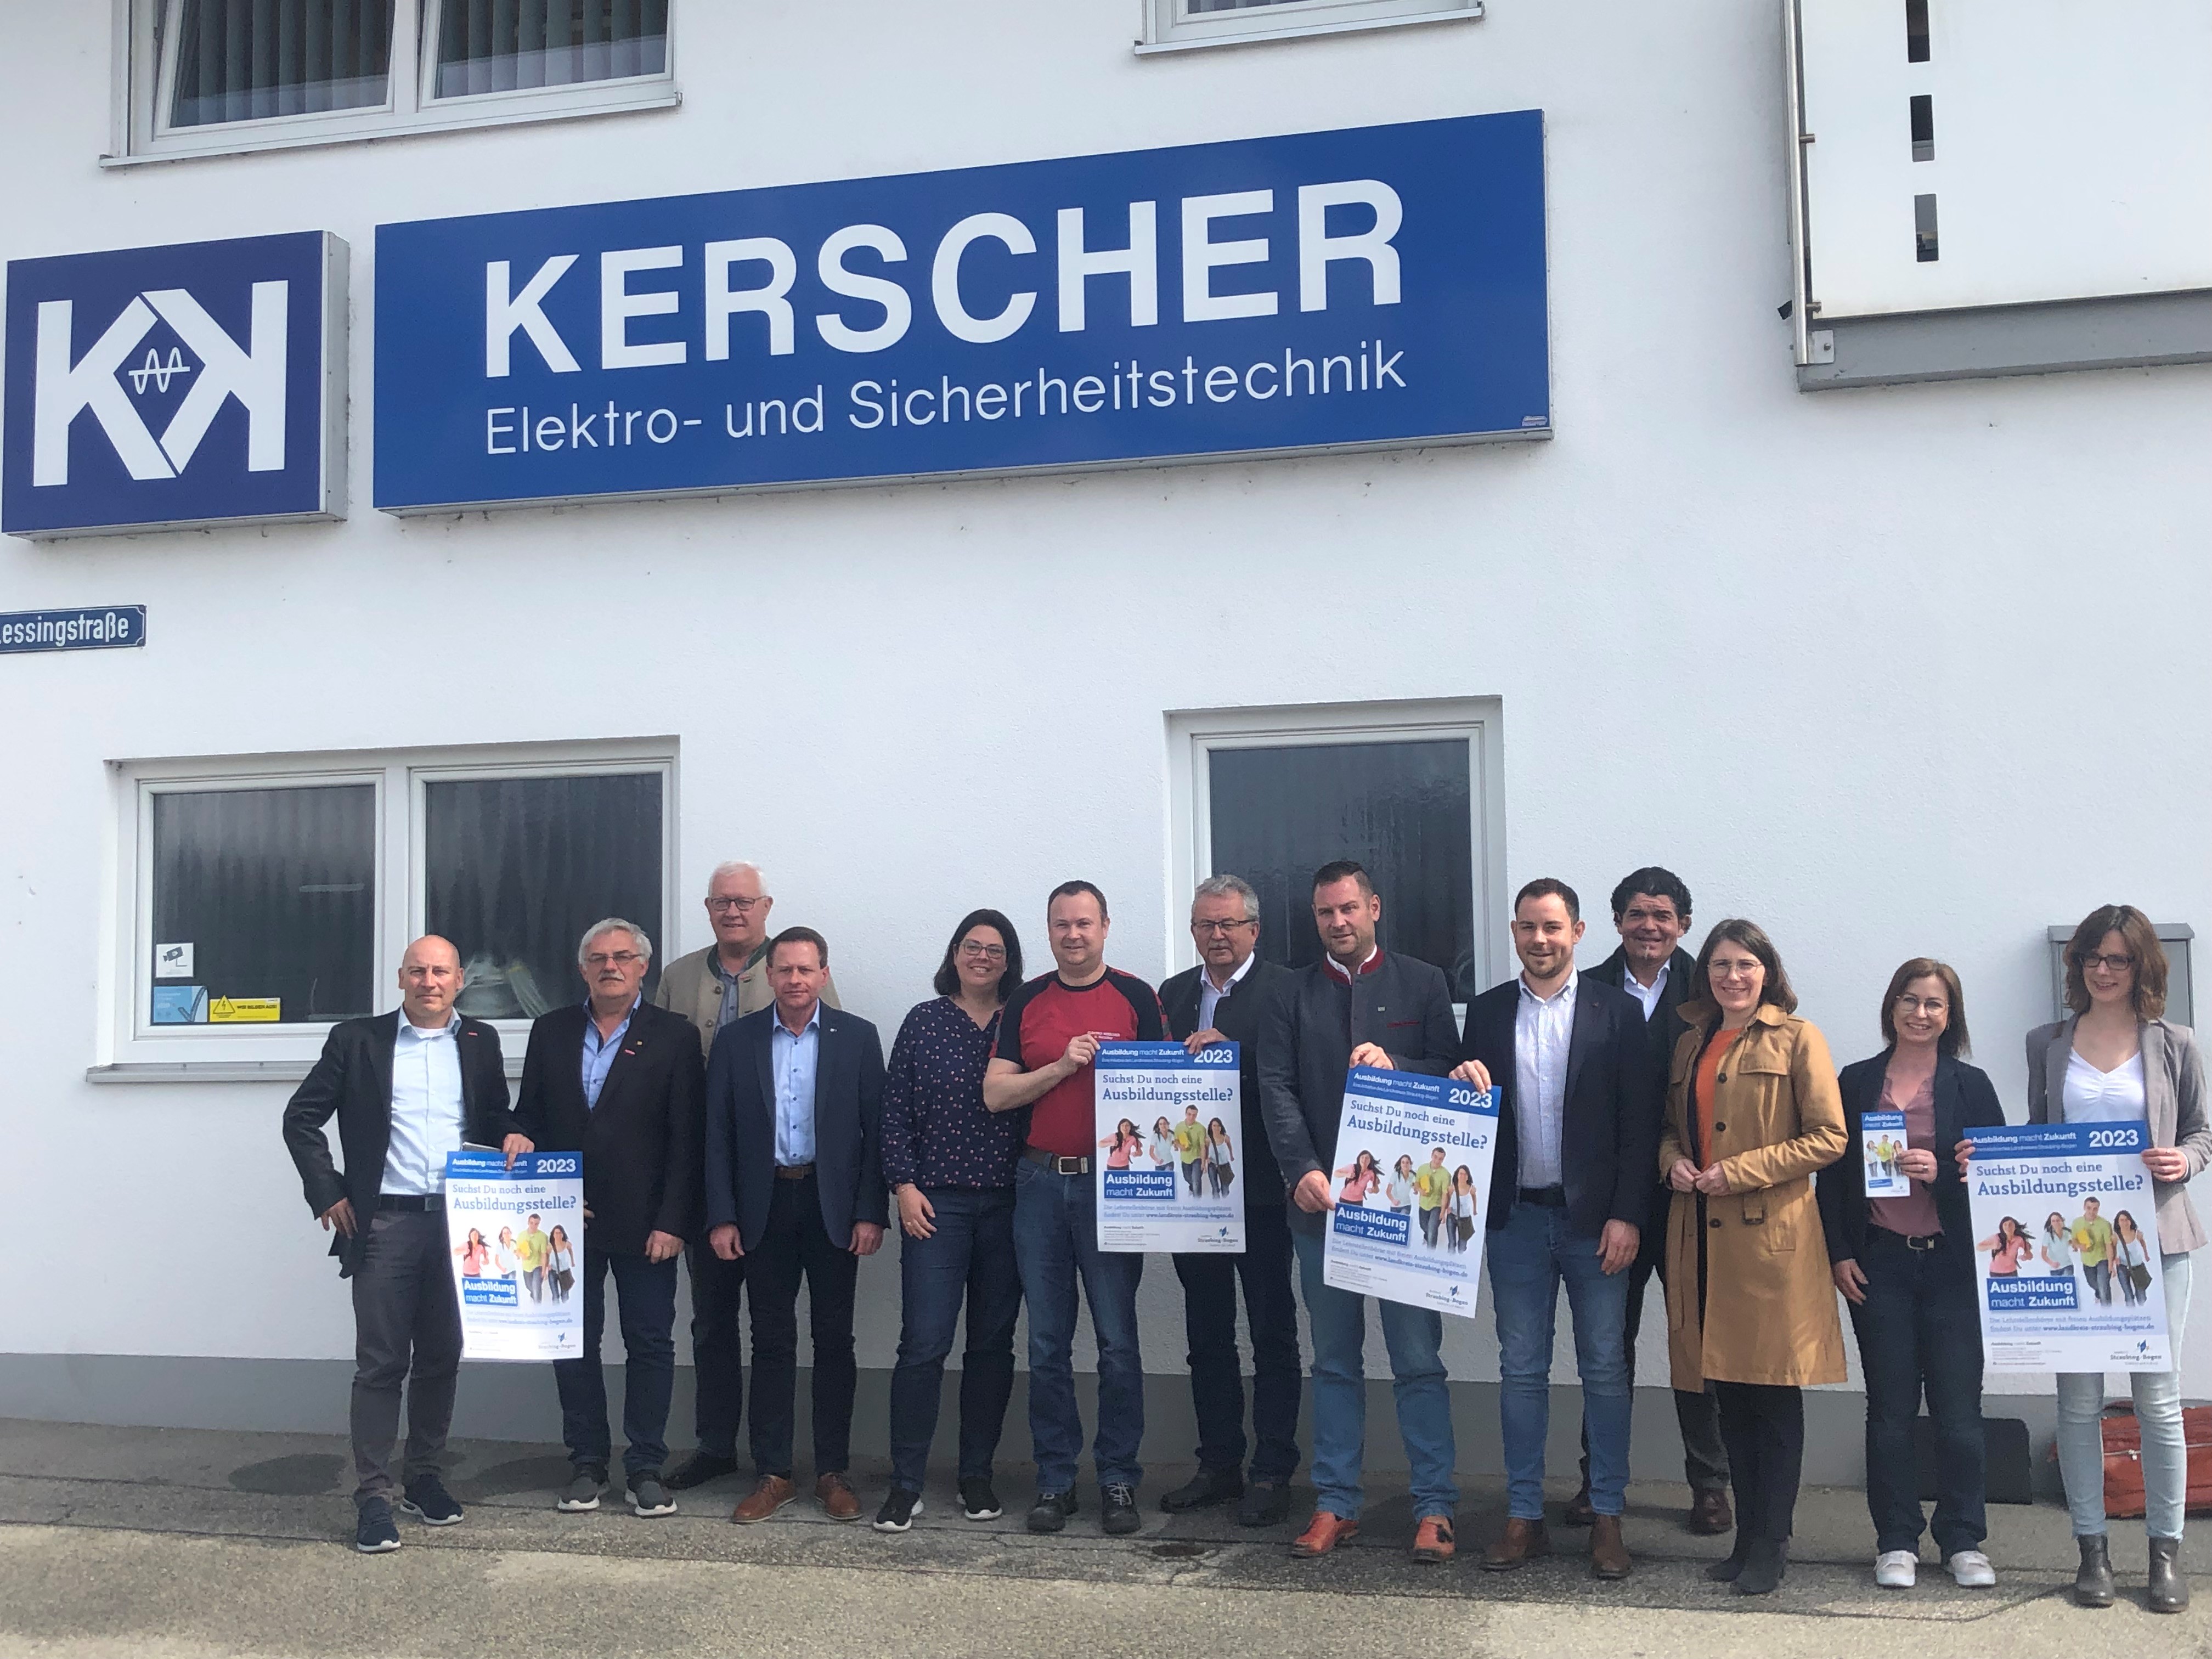 Die Teilnehmerinnen und Teilnehmer an der Auftaktveranstaltung vor dem Betrieb der Firma Kerscher.